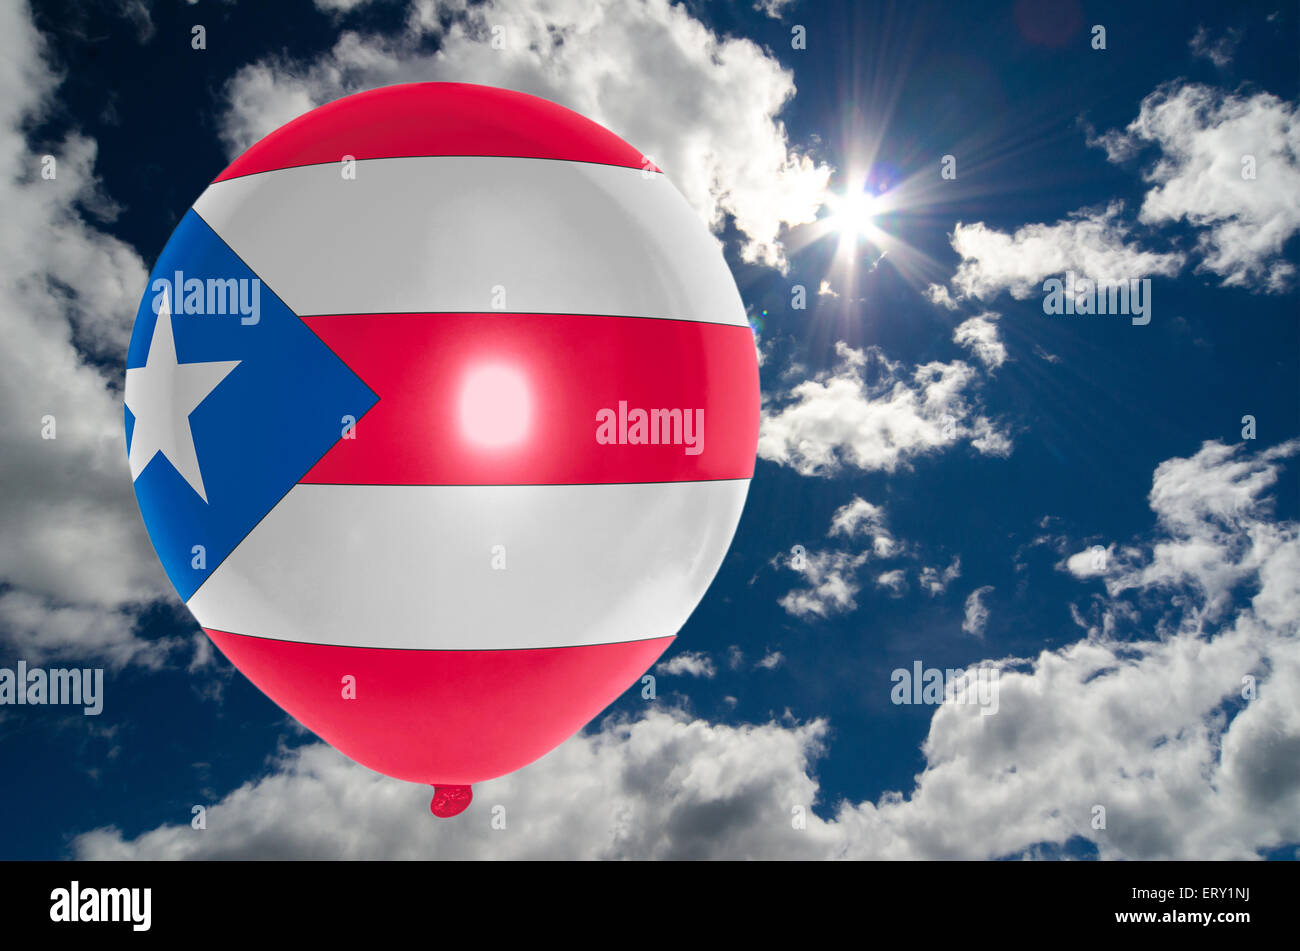 Ballon en couleurs de puertorico flag flying on blue sky Banque D'Images